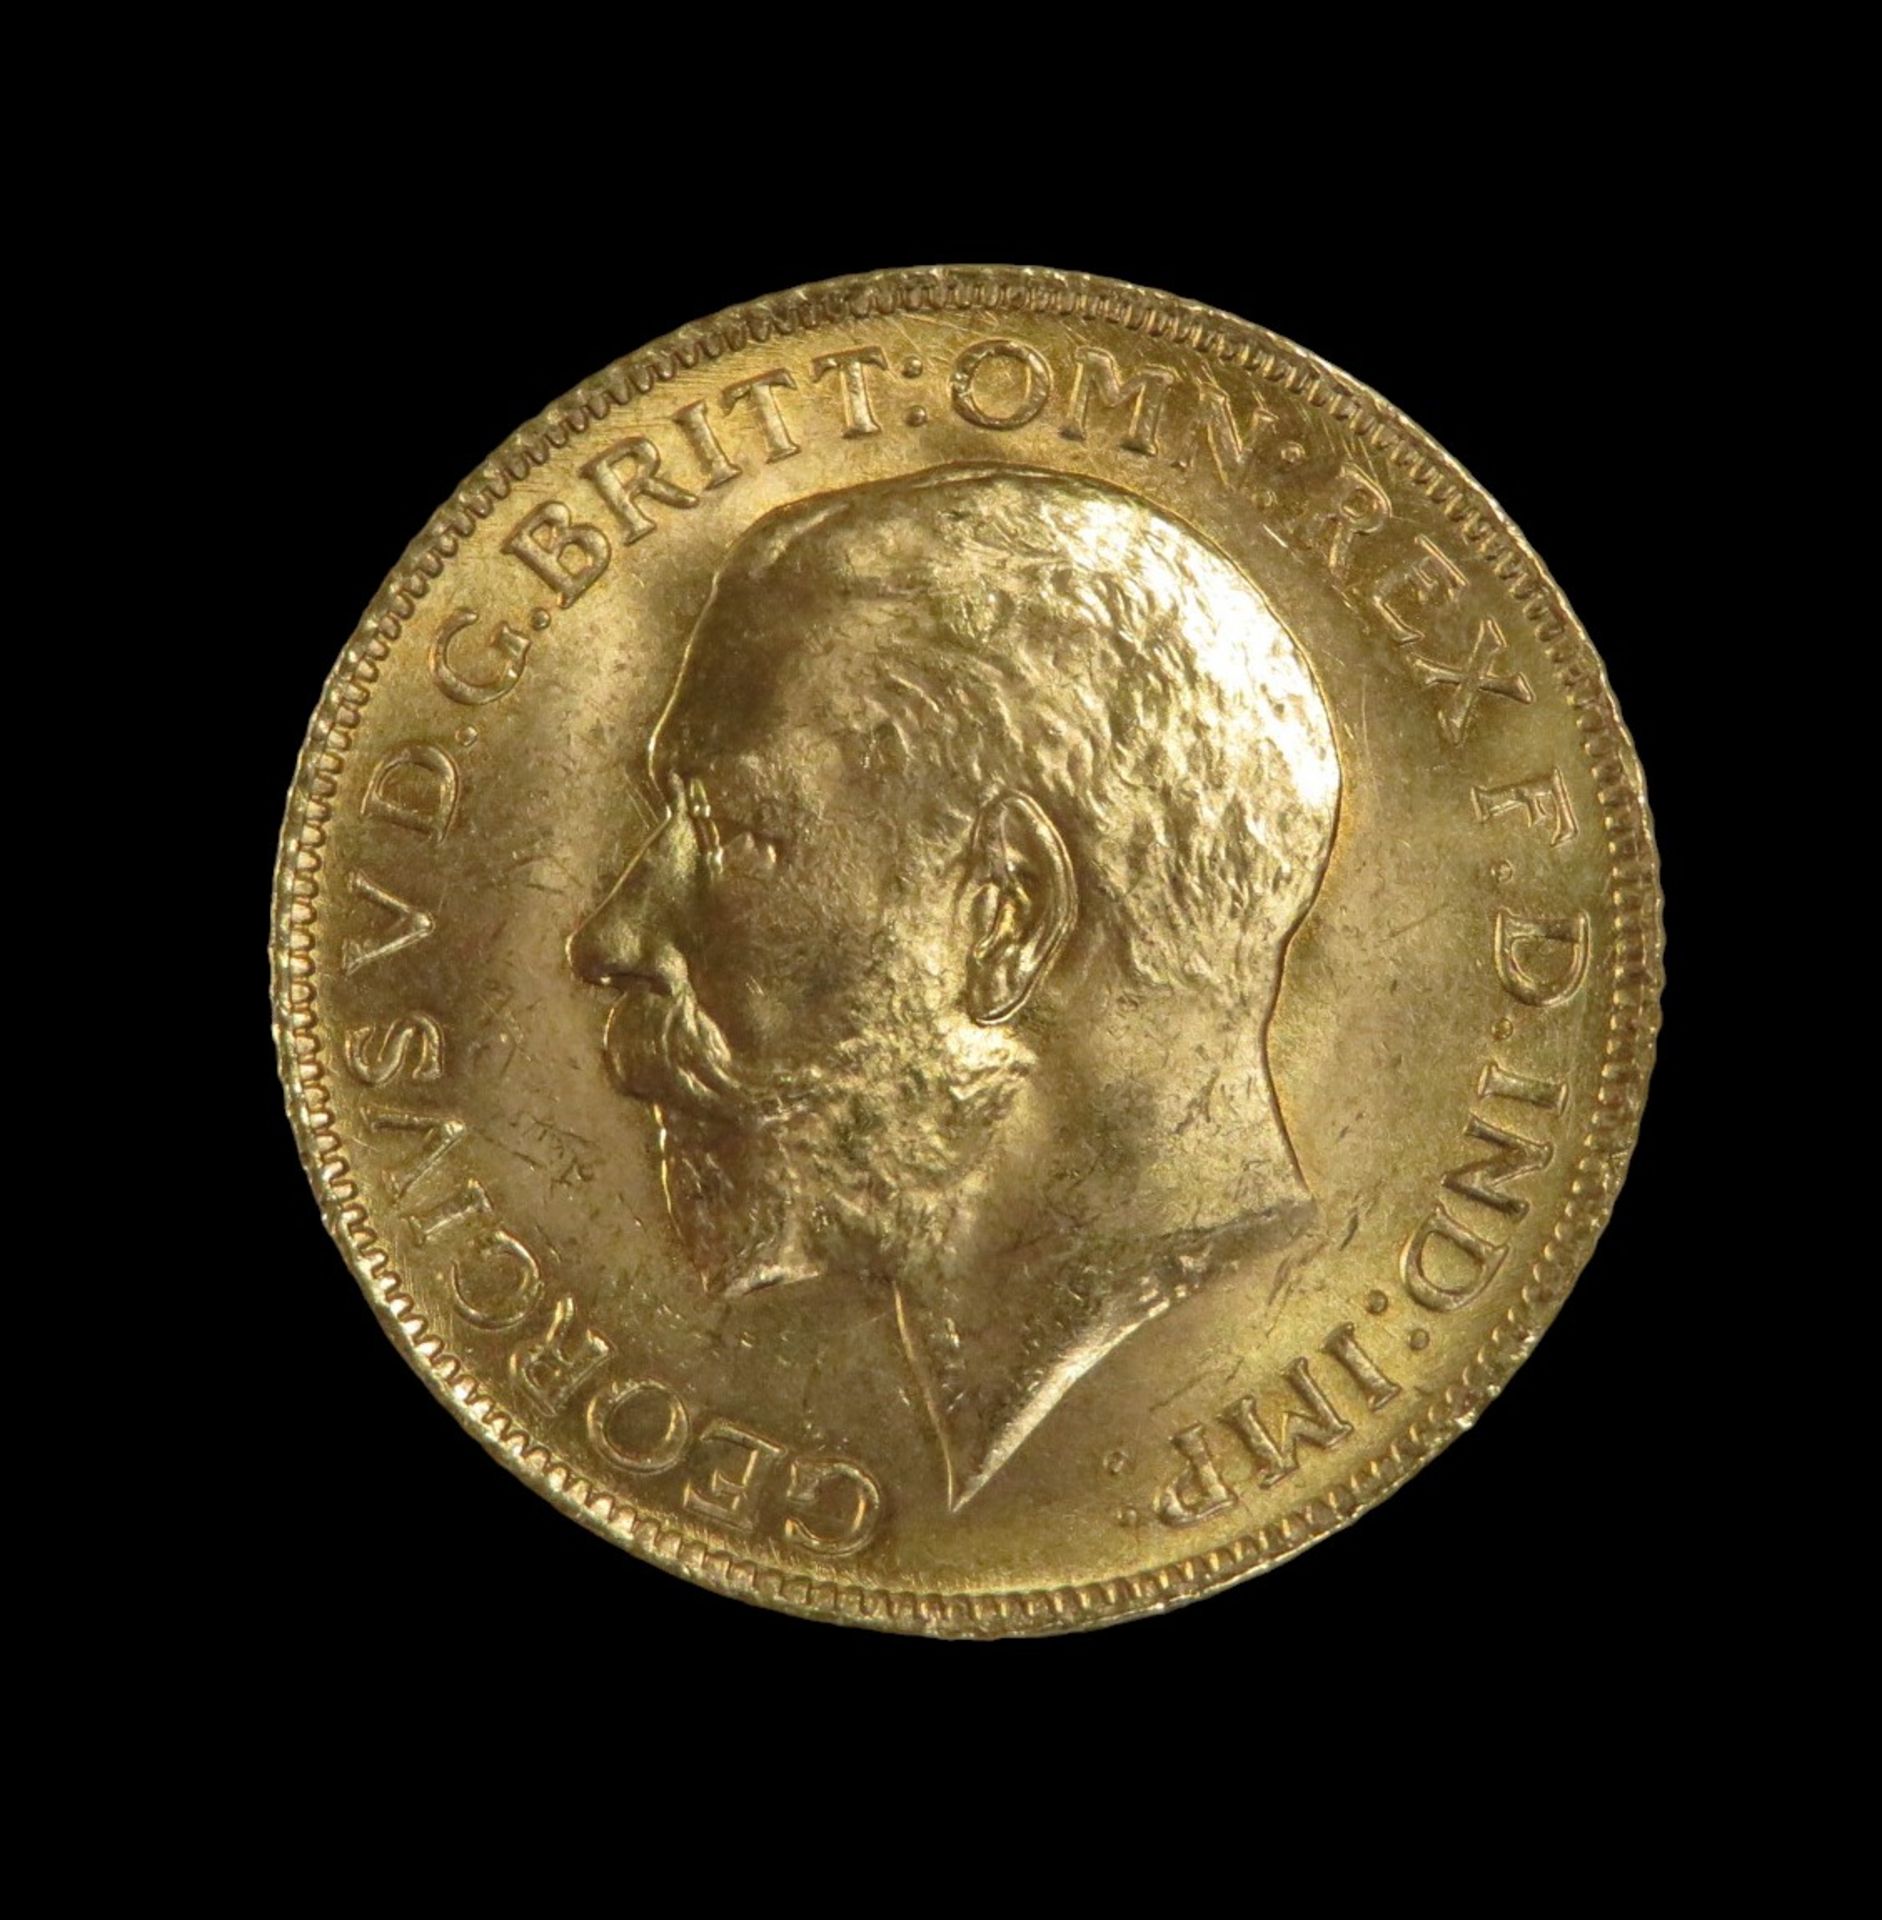 Goldmünze, 1 Pfund, Sovereign, George, 1925, Gold 916/000, 7,99 g, d 2,2 cm.